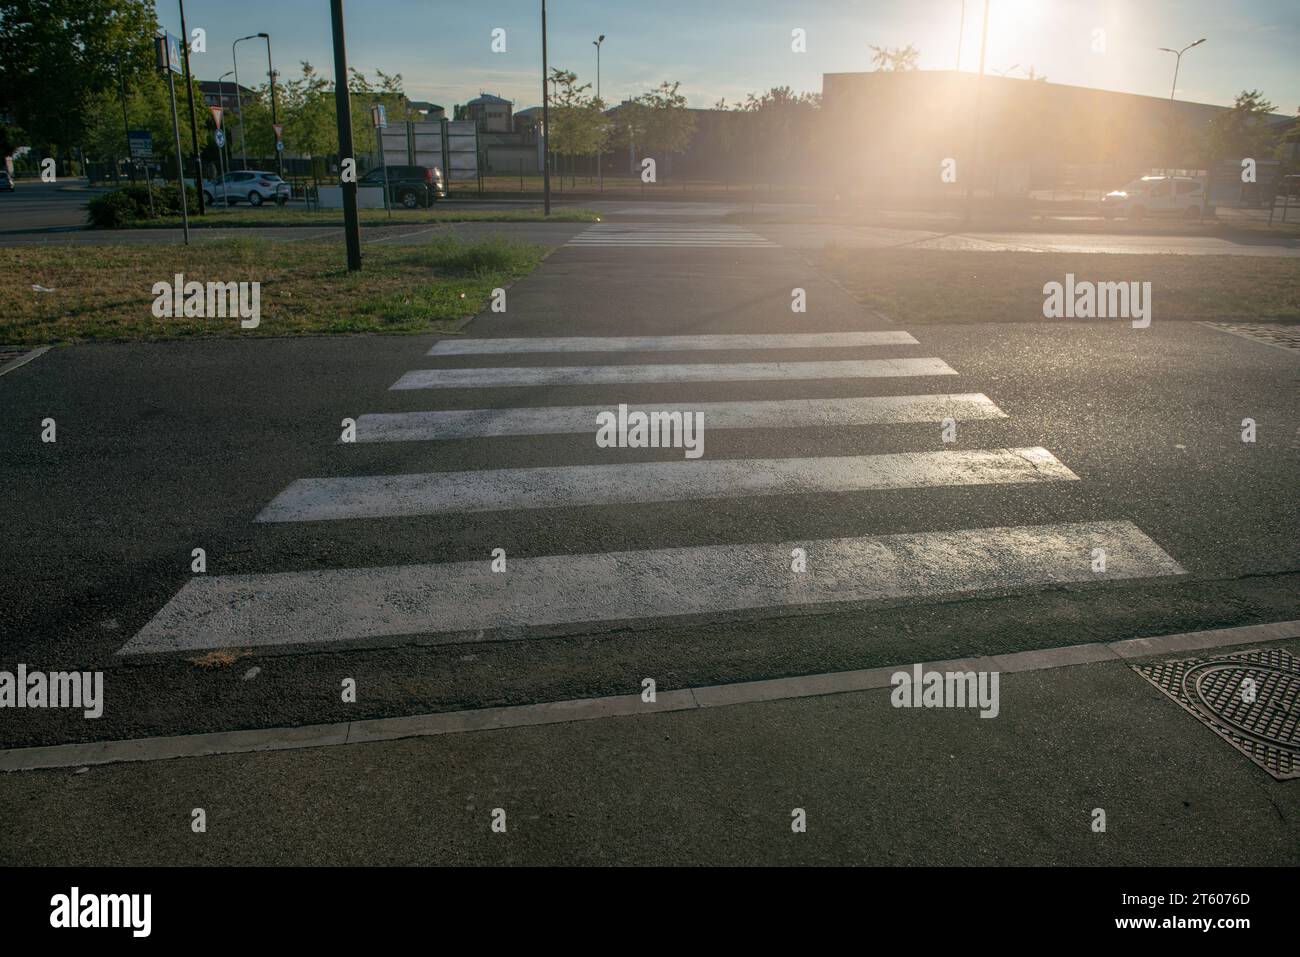 Fußgängerübergänge an der Kreuzung sind immer mit weißen Streifen und Geschwindigkeitsstößen markiert, um die Sicht zu erhöhen. Stockfoto